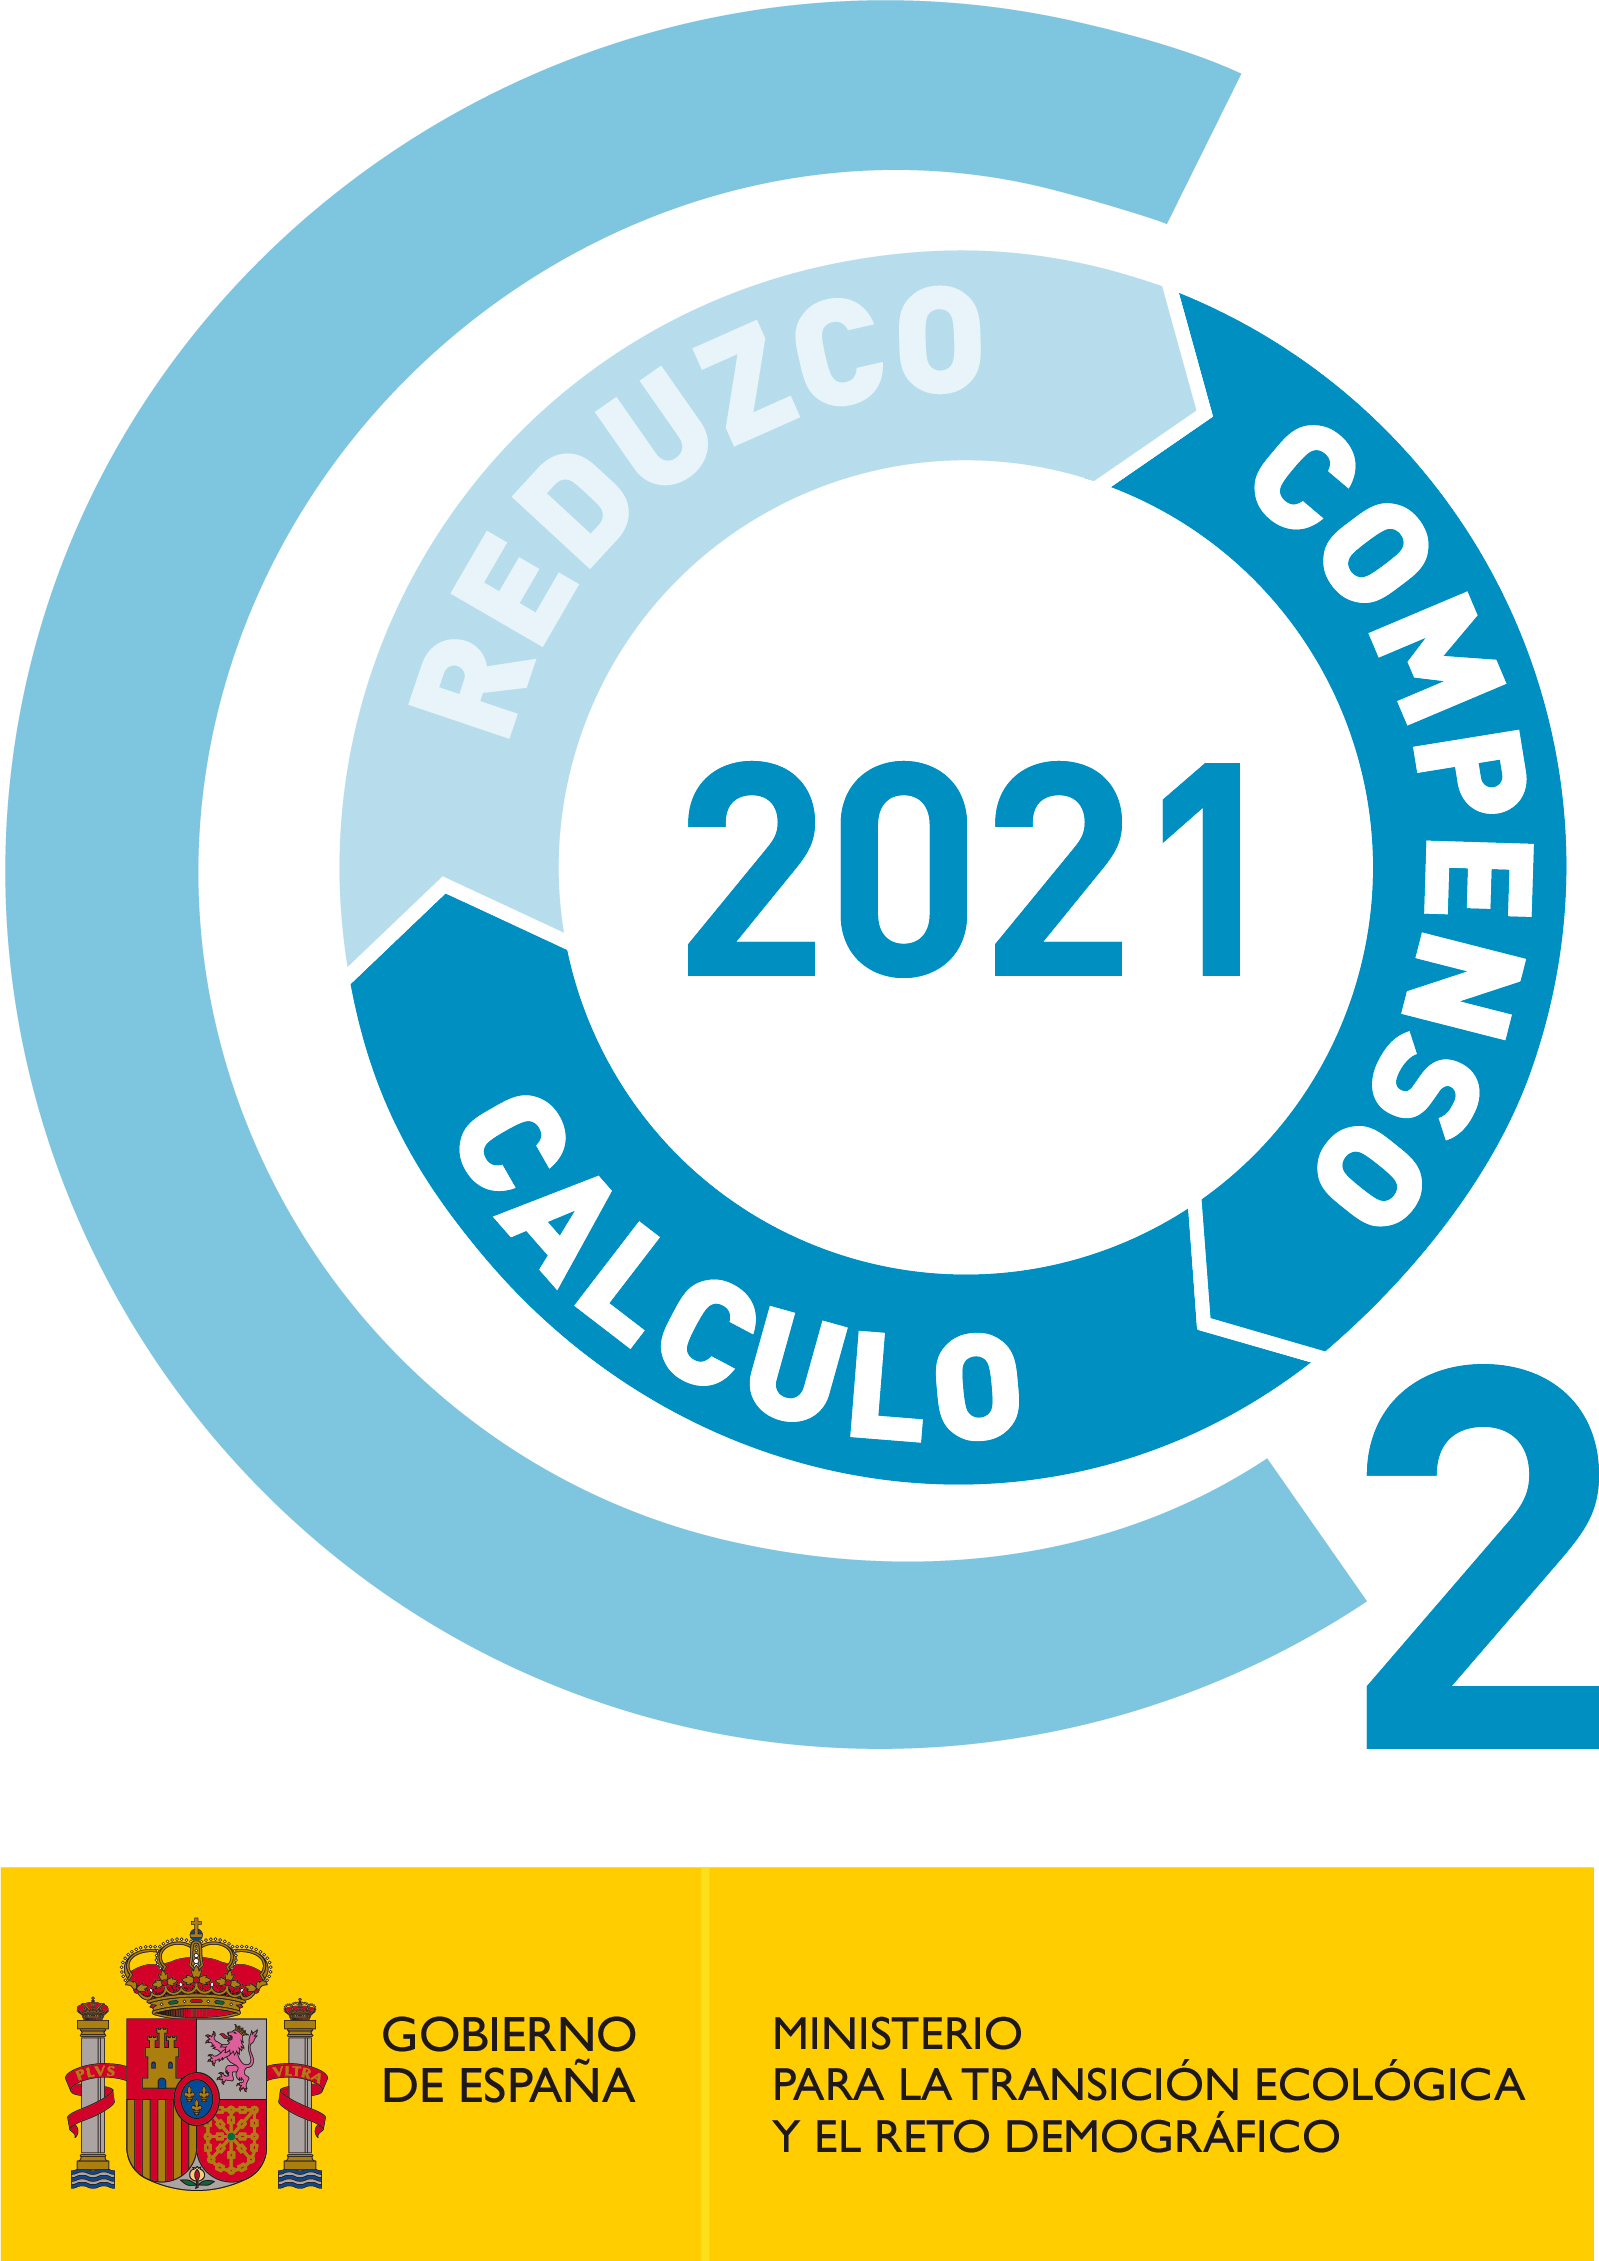 Certificado Calculo Compenso Emisiones CO2 2021. Certificado del Ministerio para la Transmisión Ecológica y el Reto Demográfico